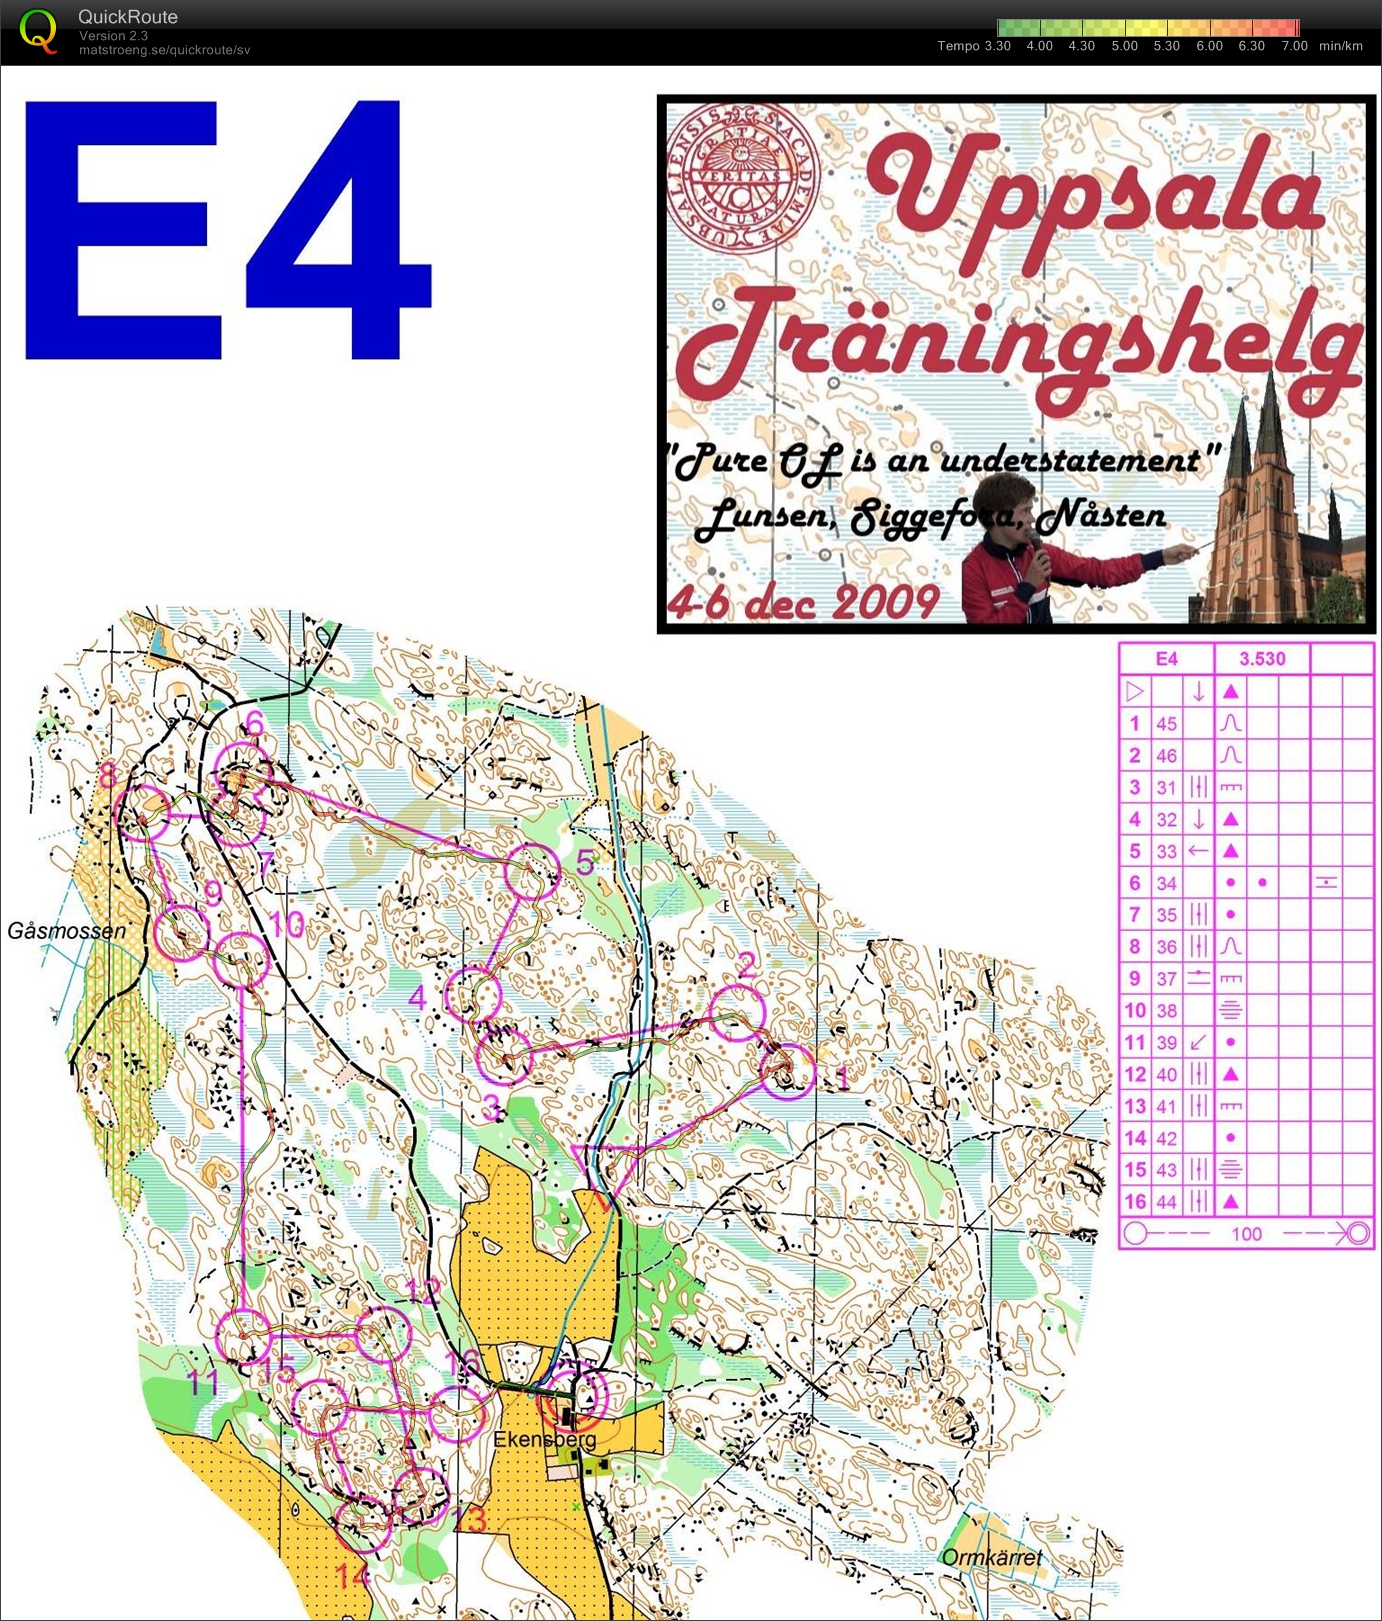 Uppsala träningshelg - Medel Ekensberg (05-12-2009)